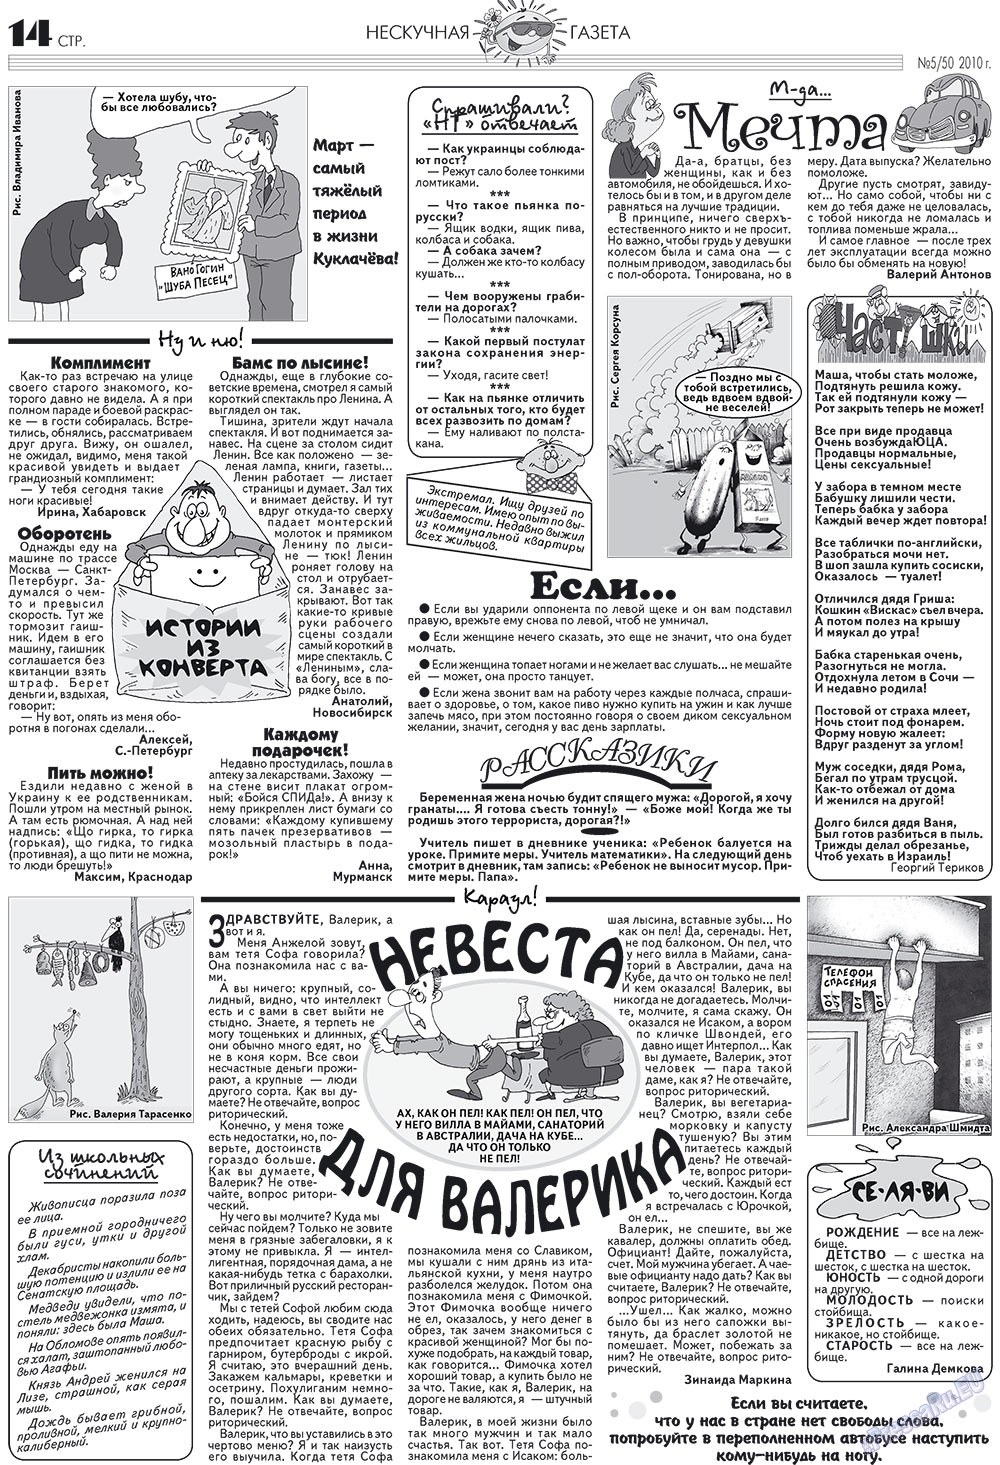 Нескучная газета (журнал). 2010 год, номер 5, стр. 14